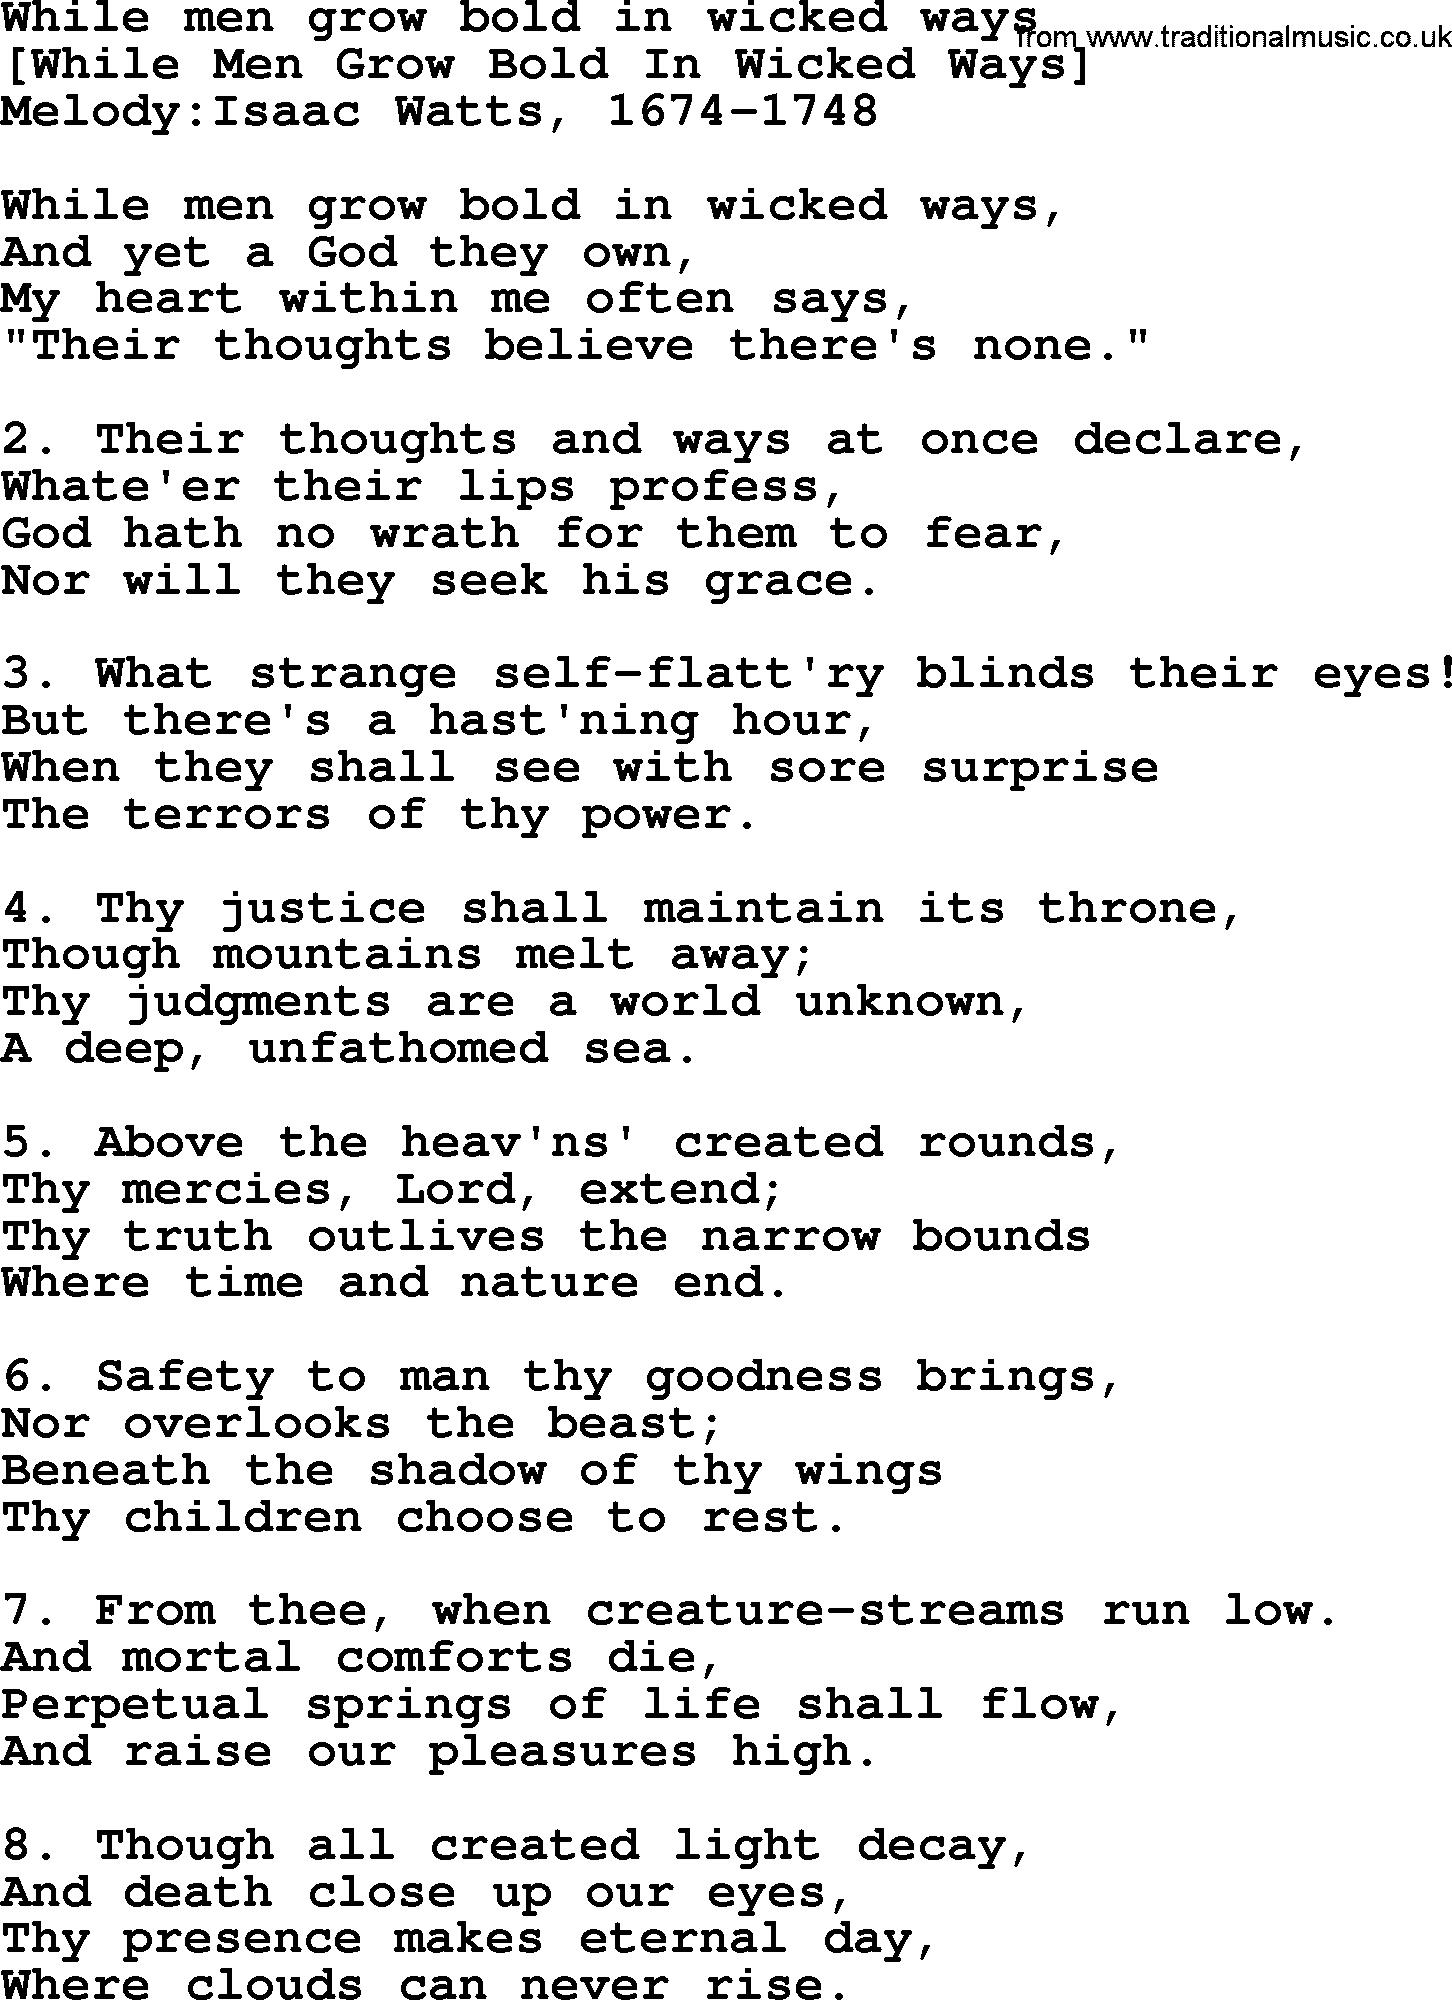 An Old Folk Song [1963]